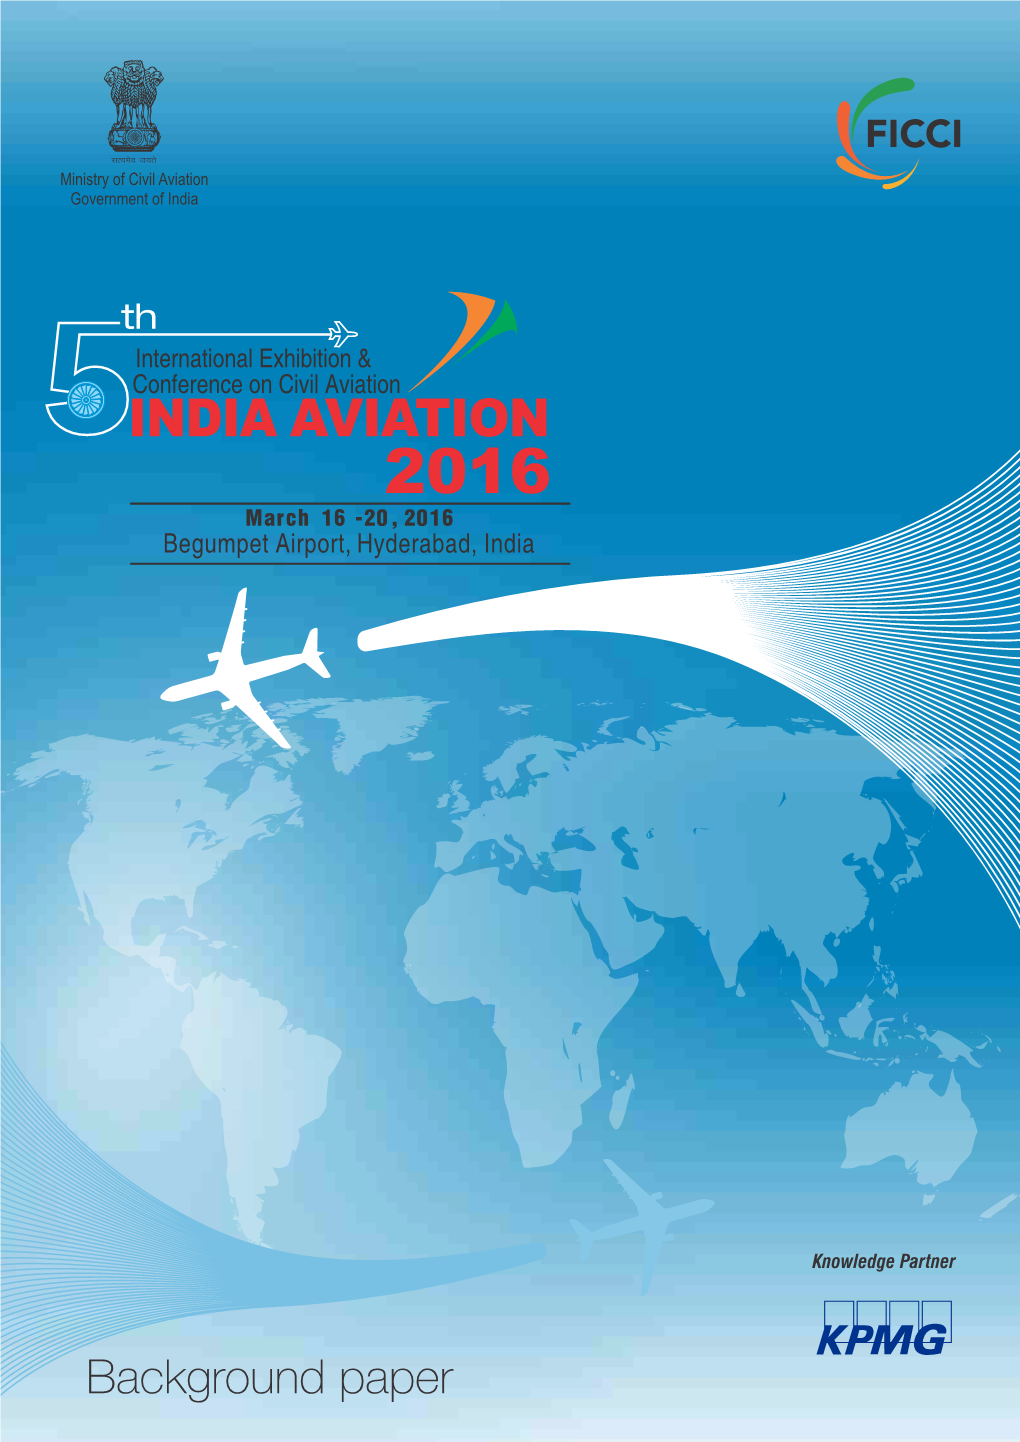 FICCI India Aviation Report 2016